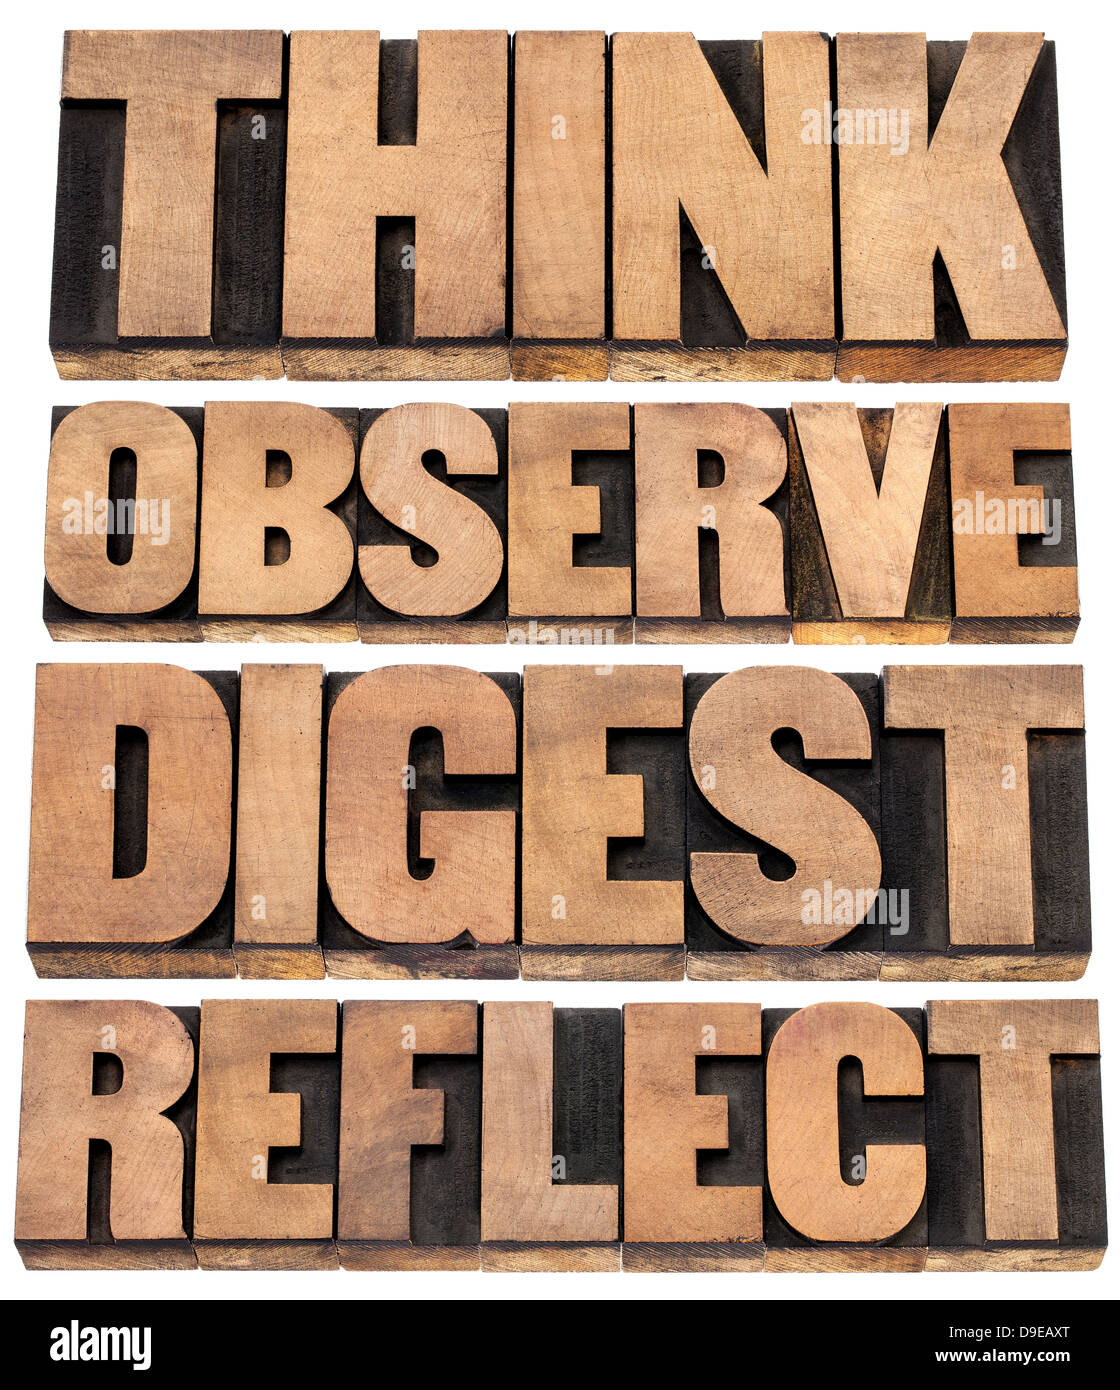 Pensar, observar, reflexionar, Digest - un conjunto de palabras de motivación - texto aislado en tipografía tipo de madera Foto de stock